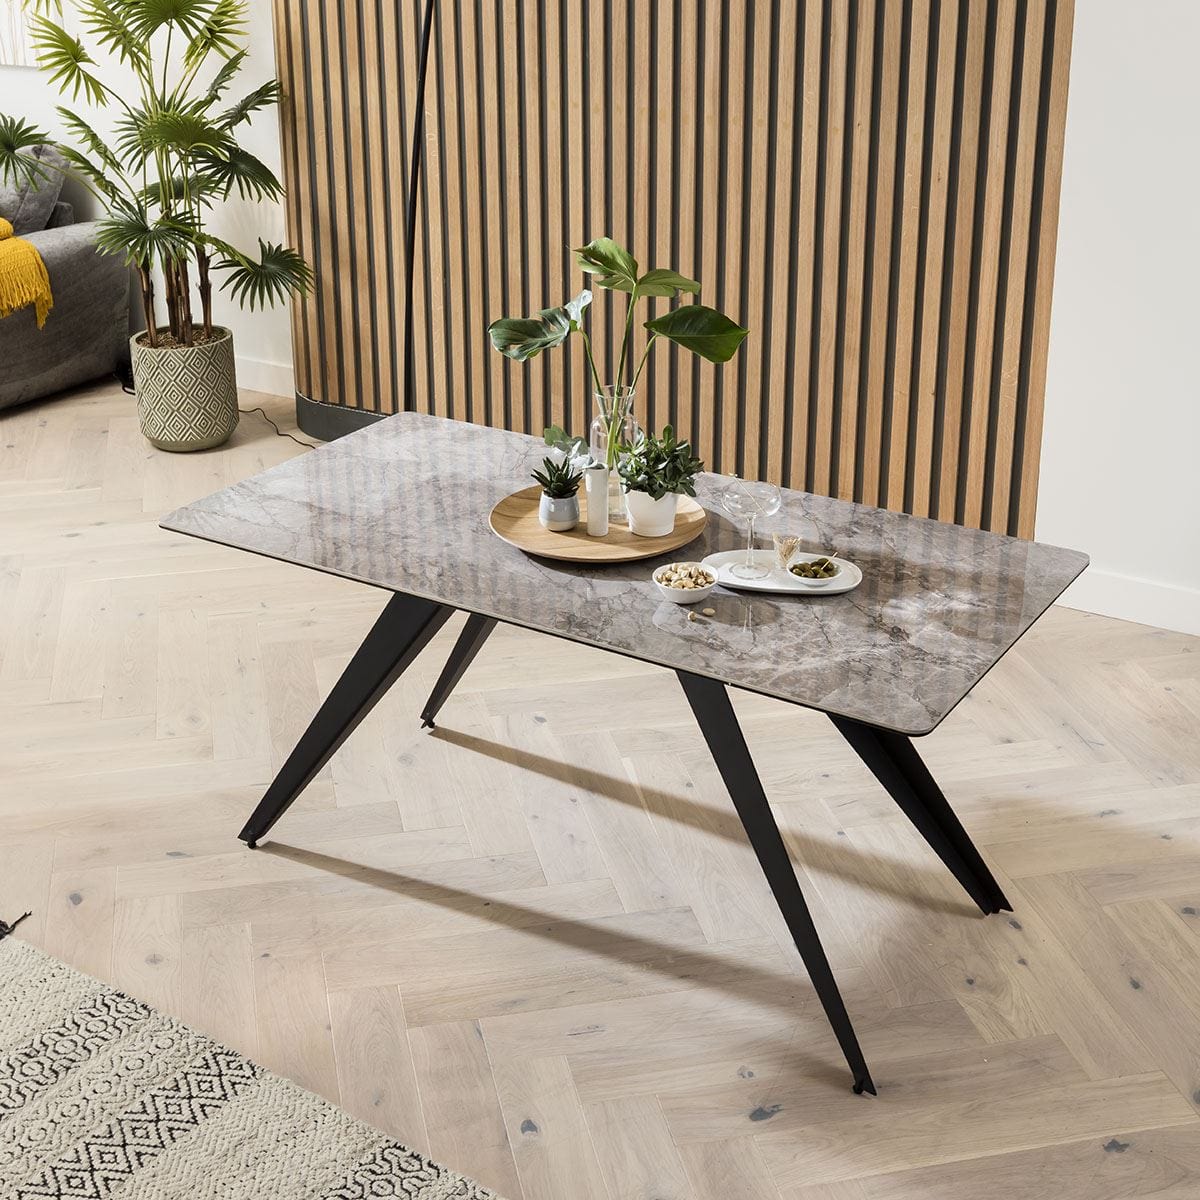 Quatropi Quatropi Rectangular Ceramic Dining Table Table 6 Seater Set - Grey Marble Effect